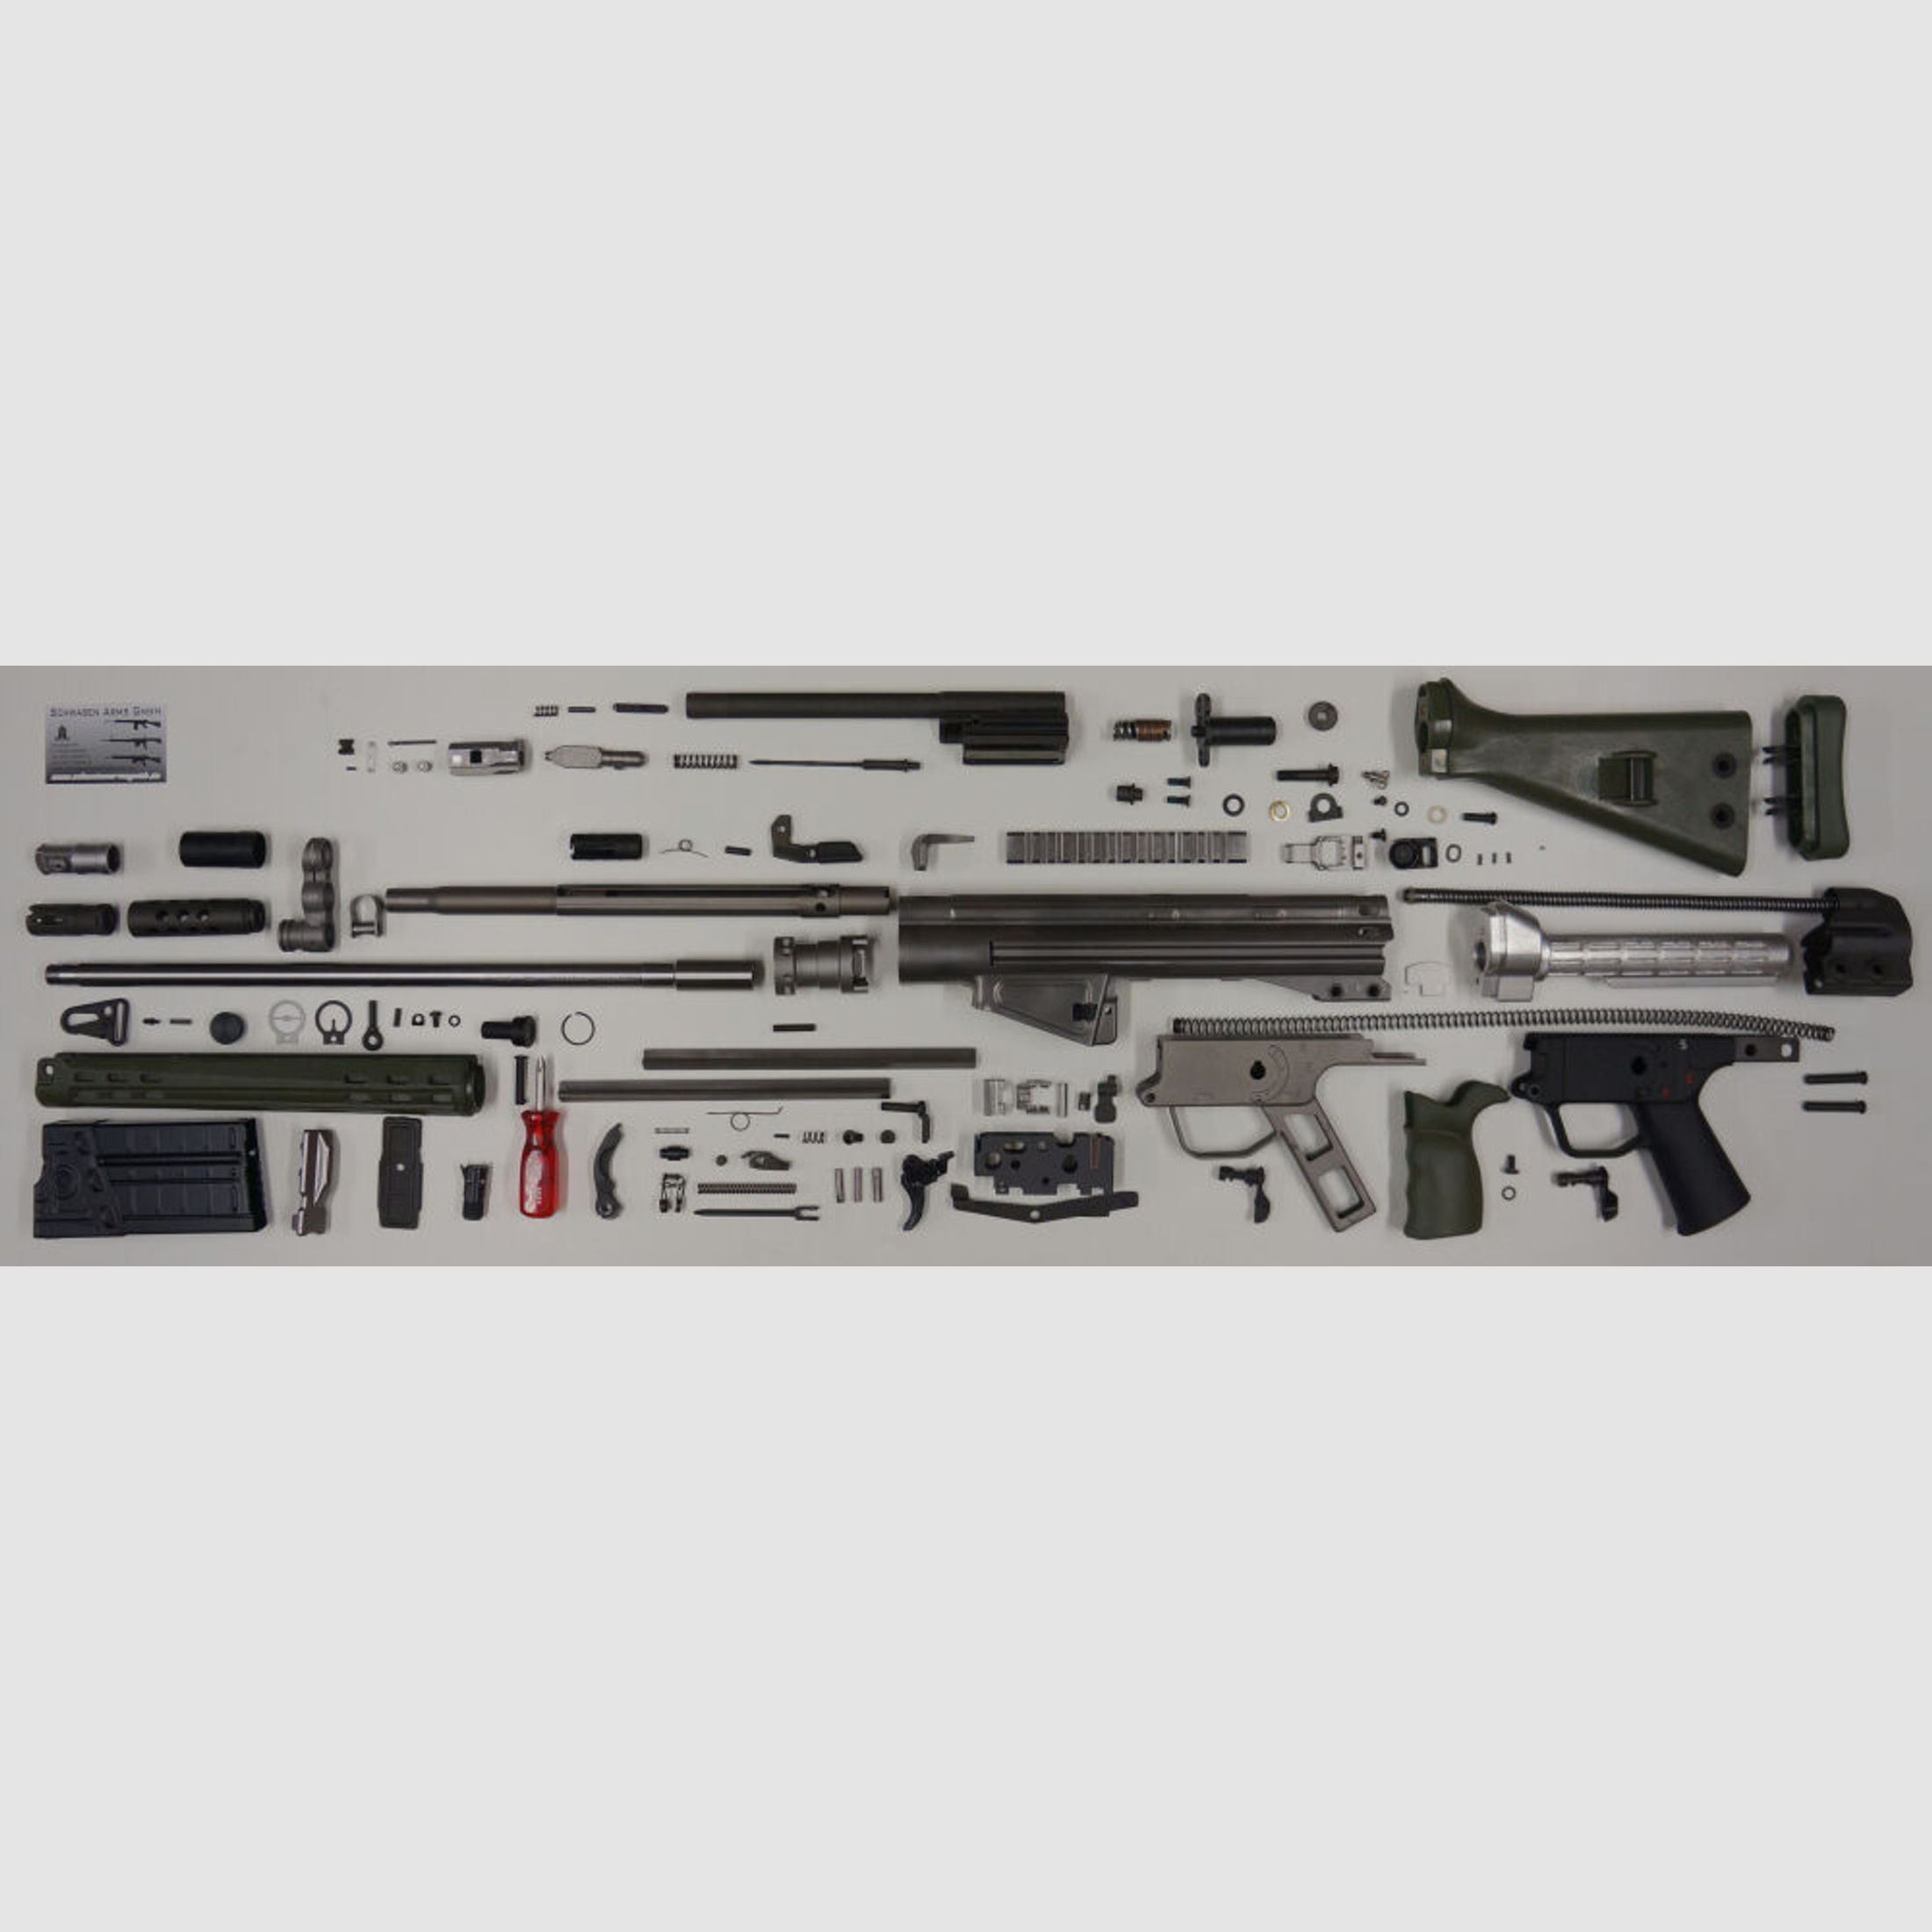 Schwaben Arms GmbH	 Selbstladebüchse SAR M41 DMR Kaliber 308win. - MADE IN GERMANY - ähnlich HK41/G3